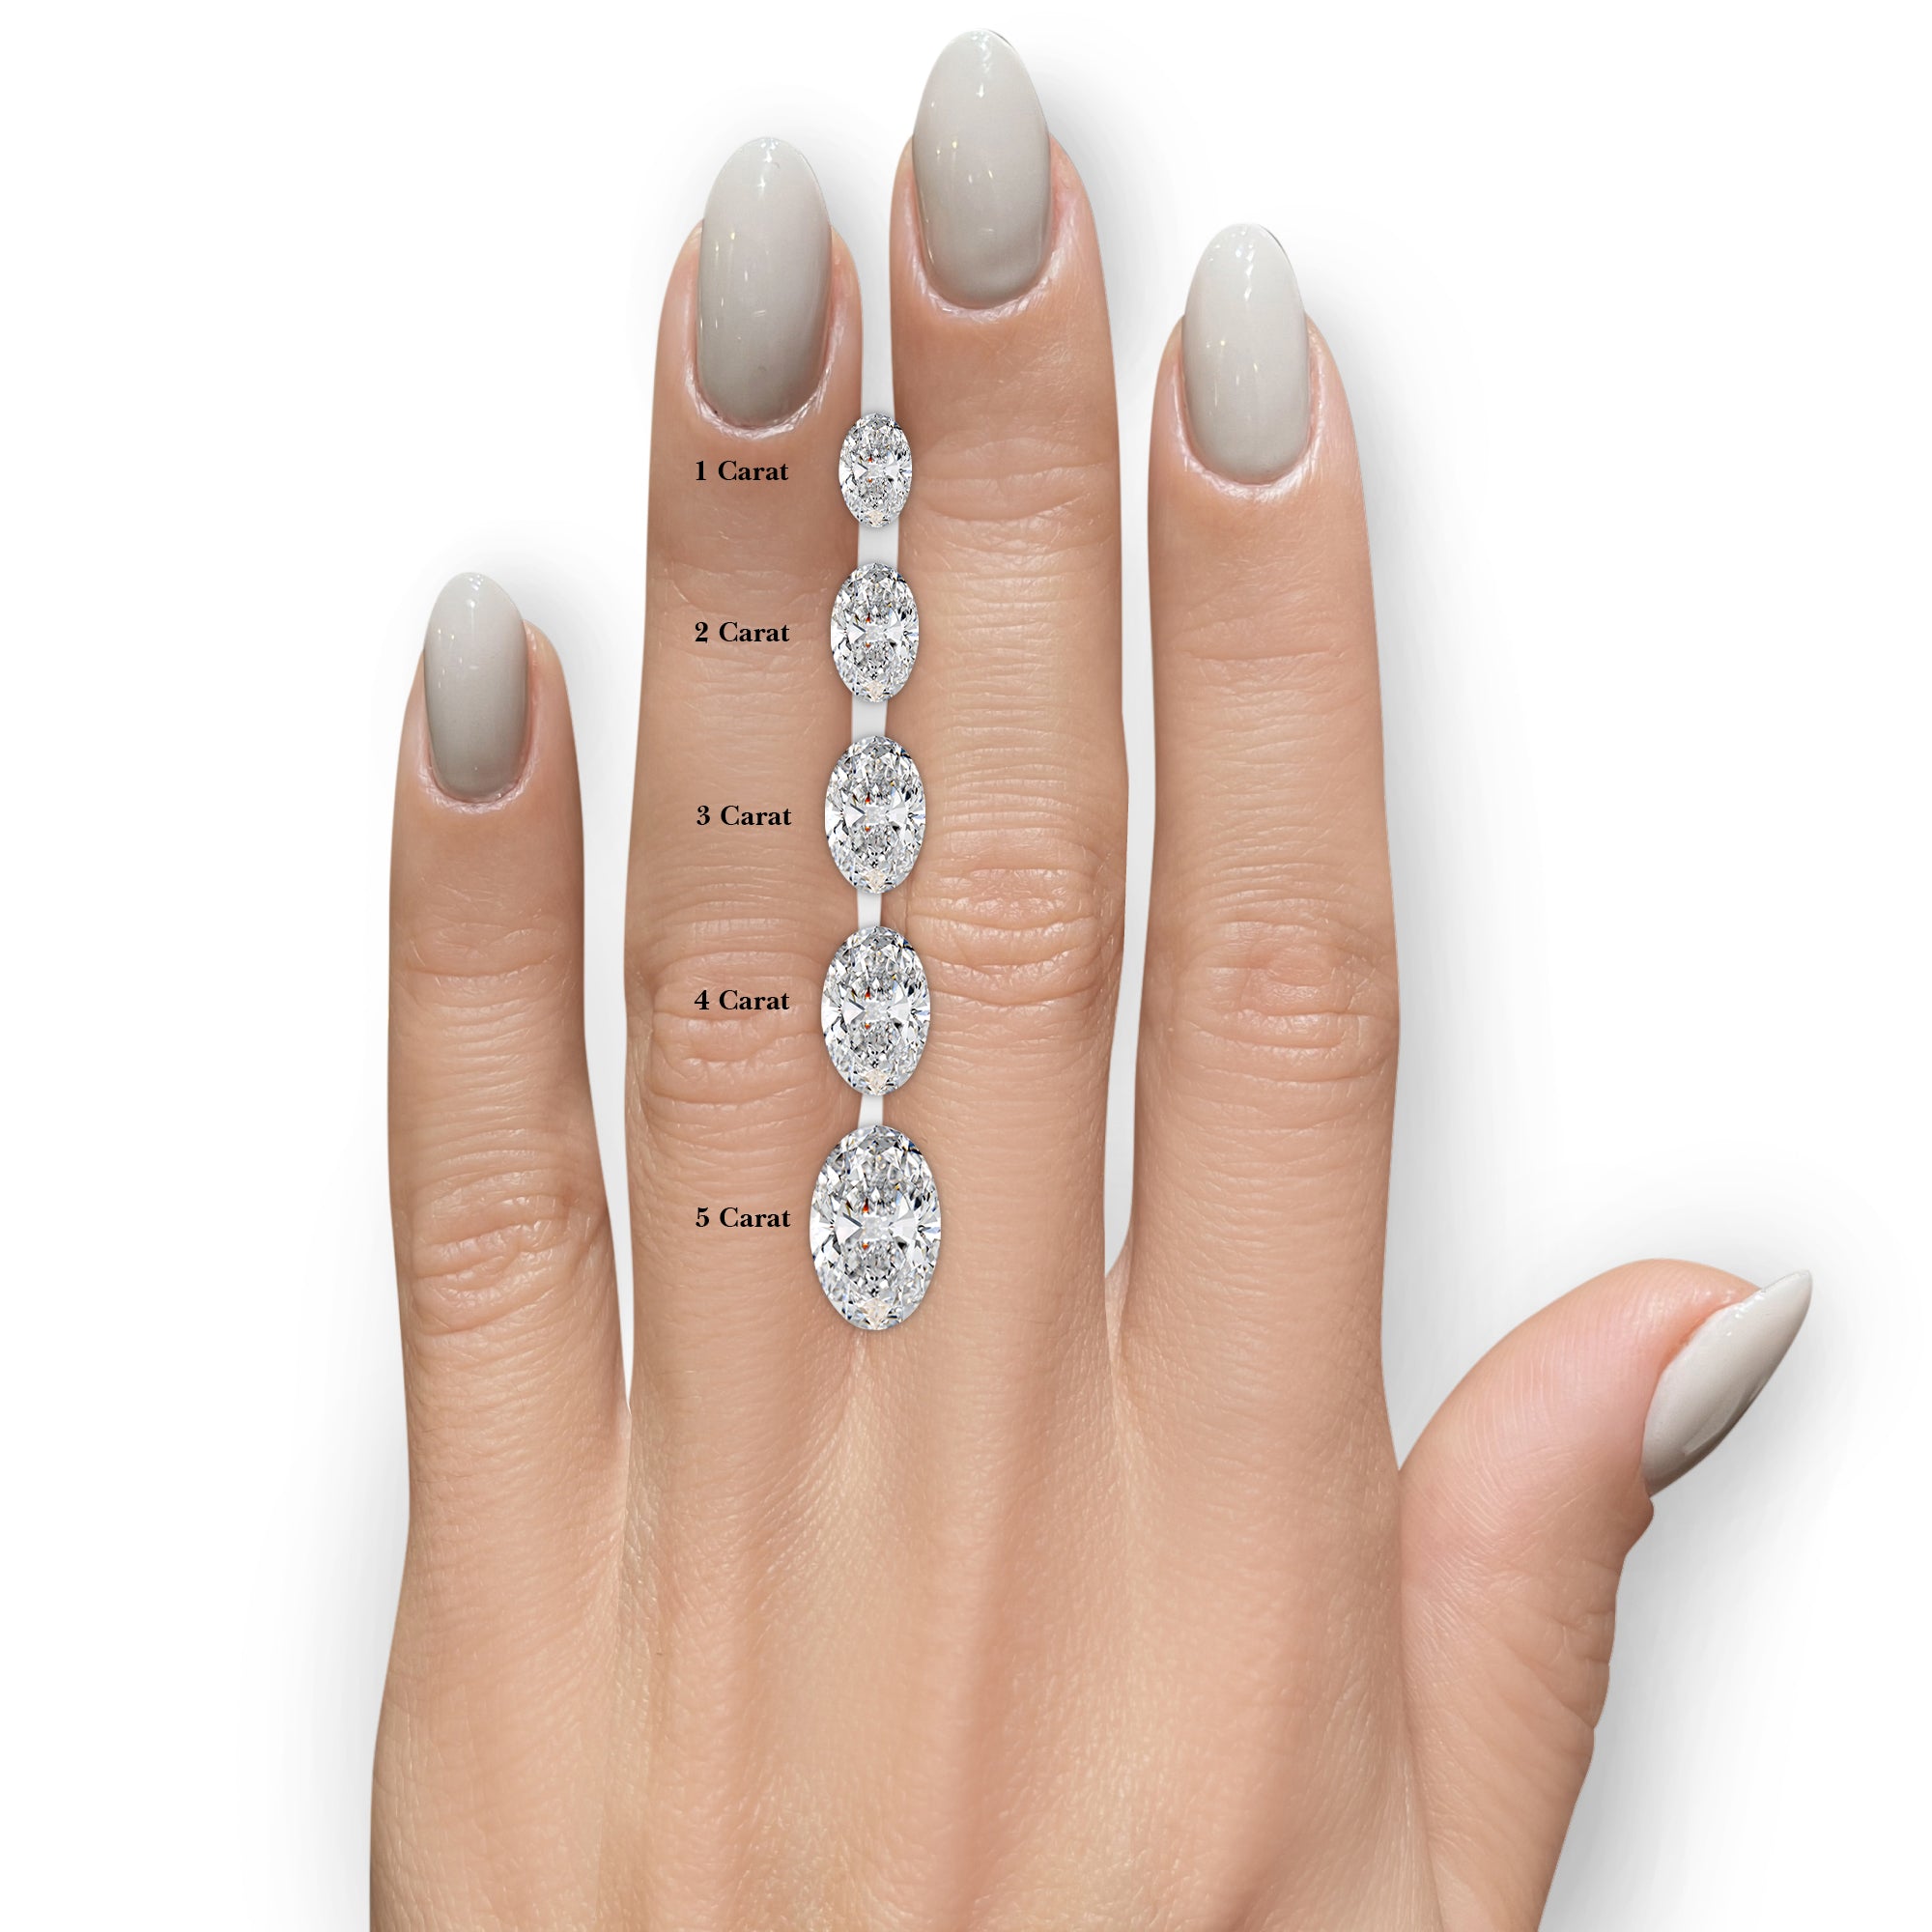 Stella Lab Grown Diamond Ring -14K White Gold